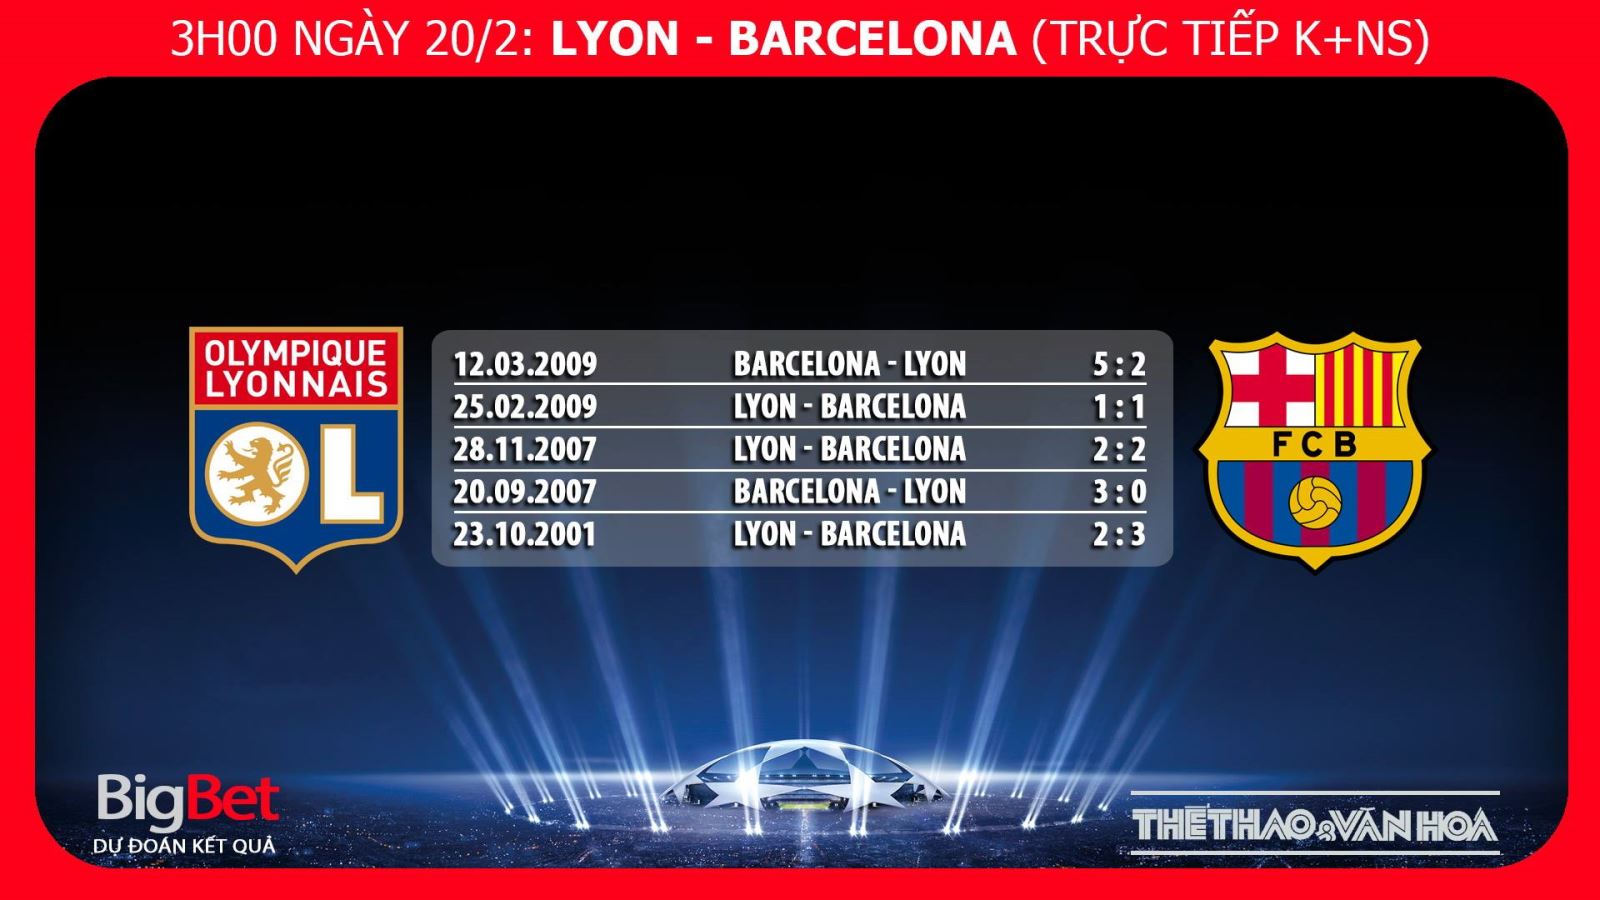 Kèo bóng đá, Nhận định bóng đá Lyon Barca, kèo Barca vs Lyon, kèo Lyon Barca, kèo Barca, trực tiếp bóng đá, trực tiếp Lyon Barcelona, truc tiep Barca, truc tiep bong da